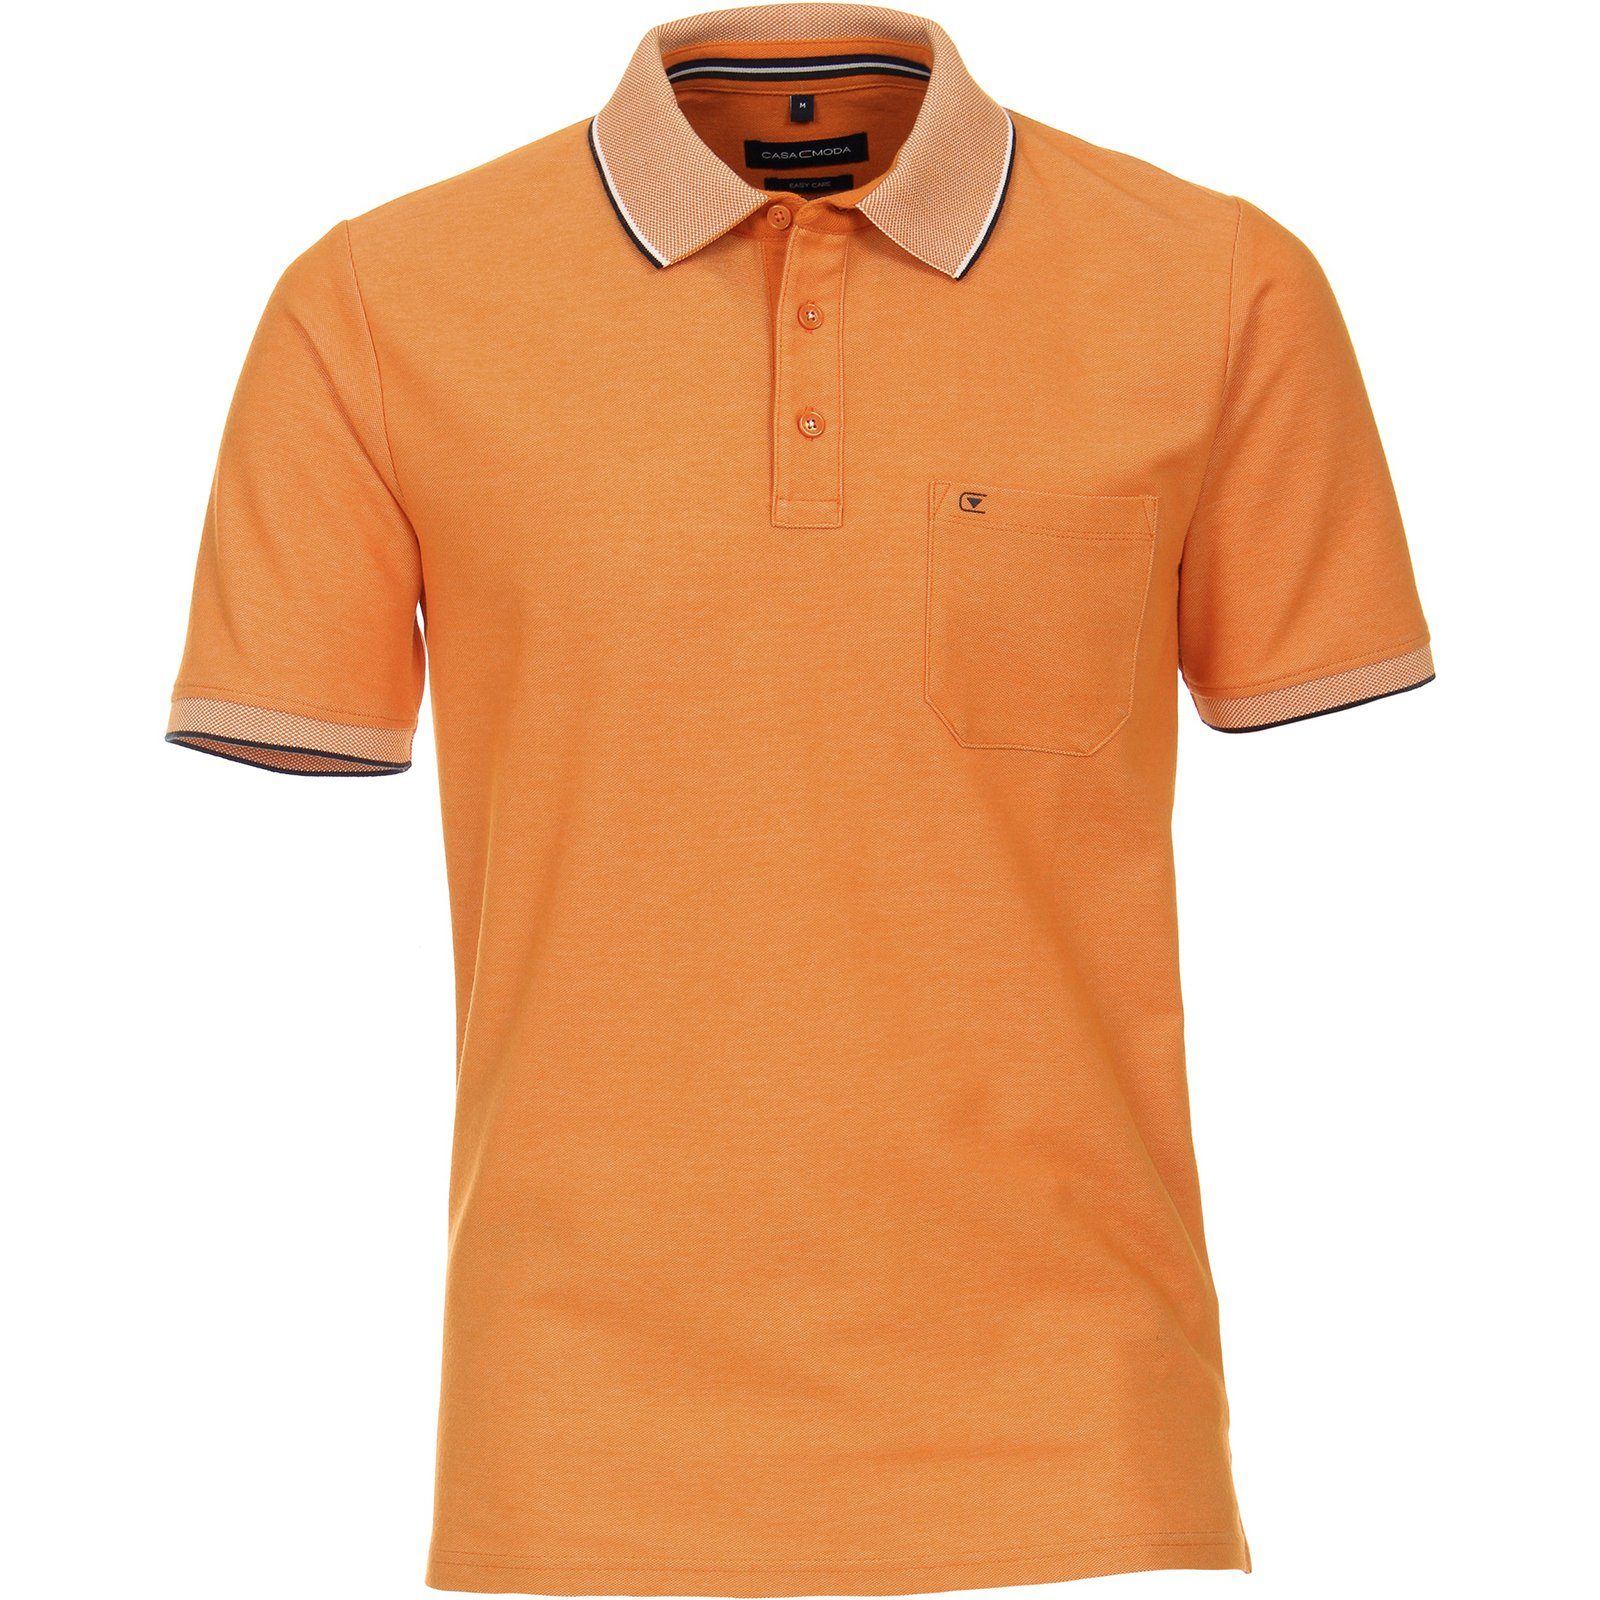 Poloshirt orange CASAMODA Große Größen Poloshirt CasaModa Herren easy care melange